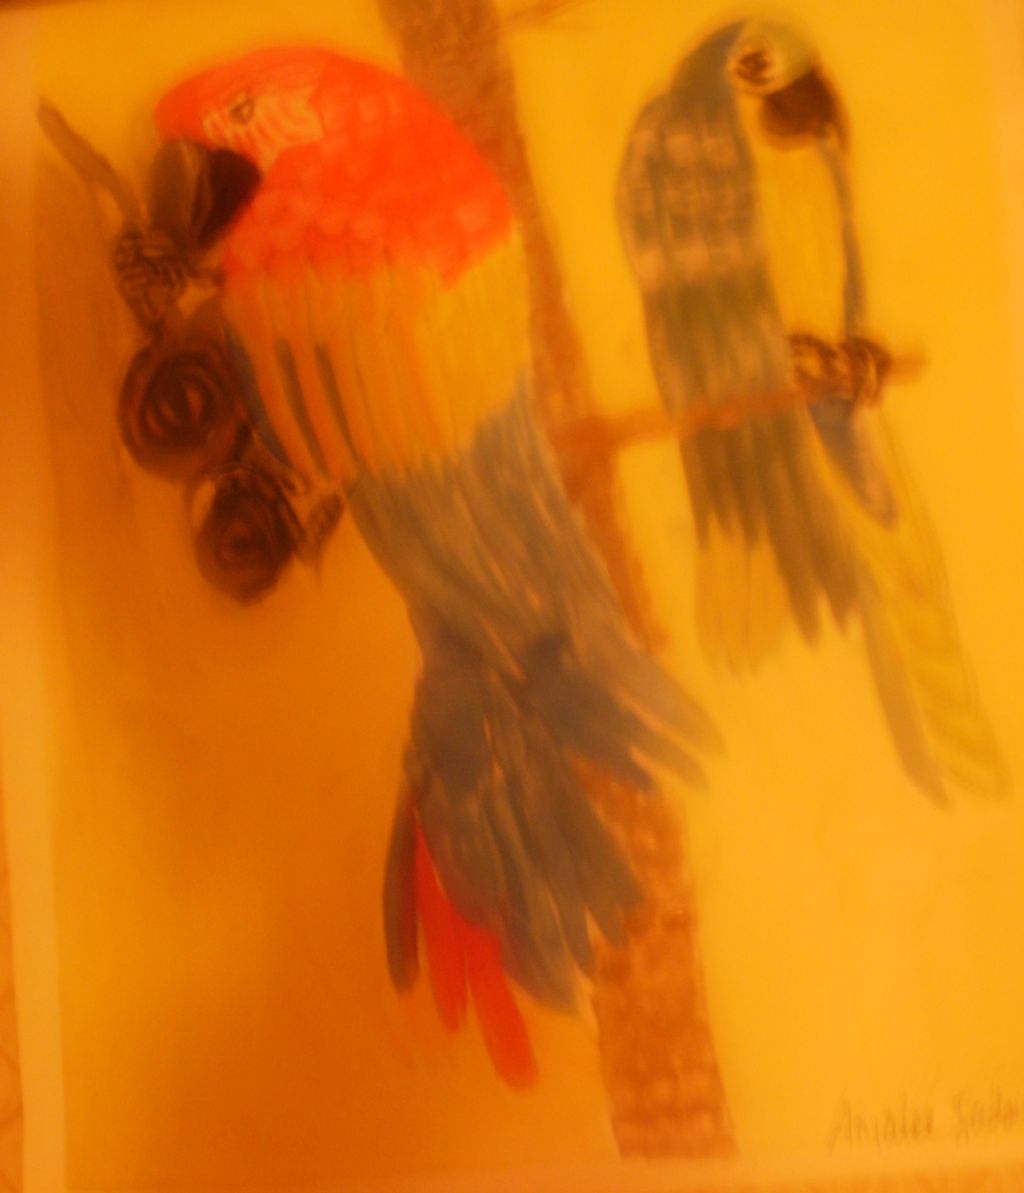 Watercolor Parrots